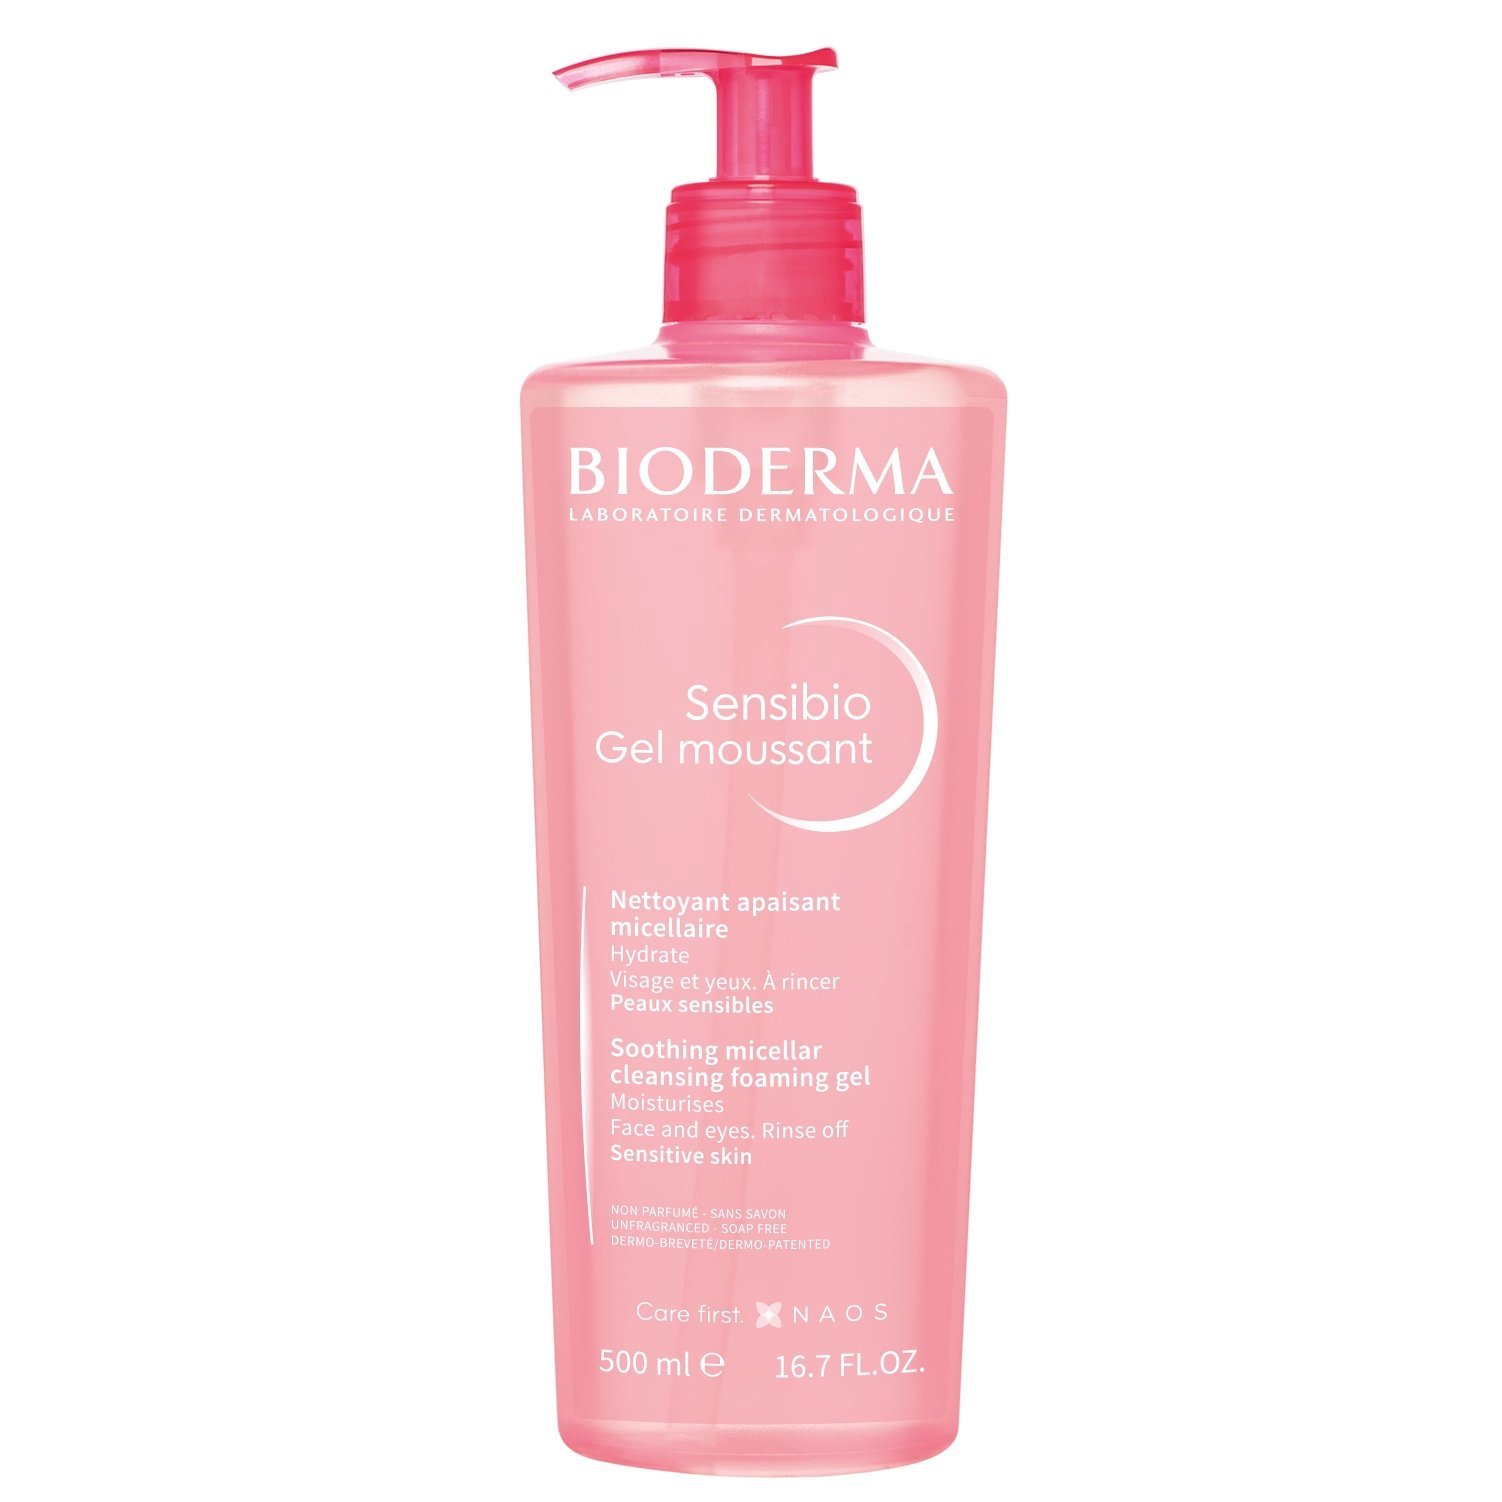 Очищаюший гель для умывания Bioderma Sensibio, для чувствительной кожи, 500 мл (28727) - фото 1